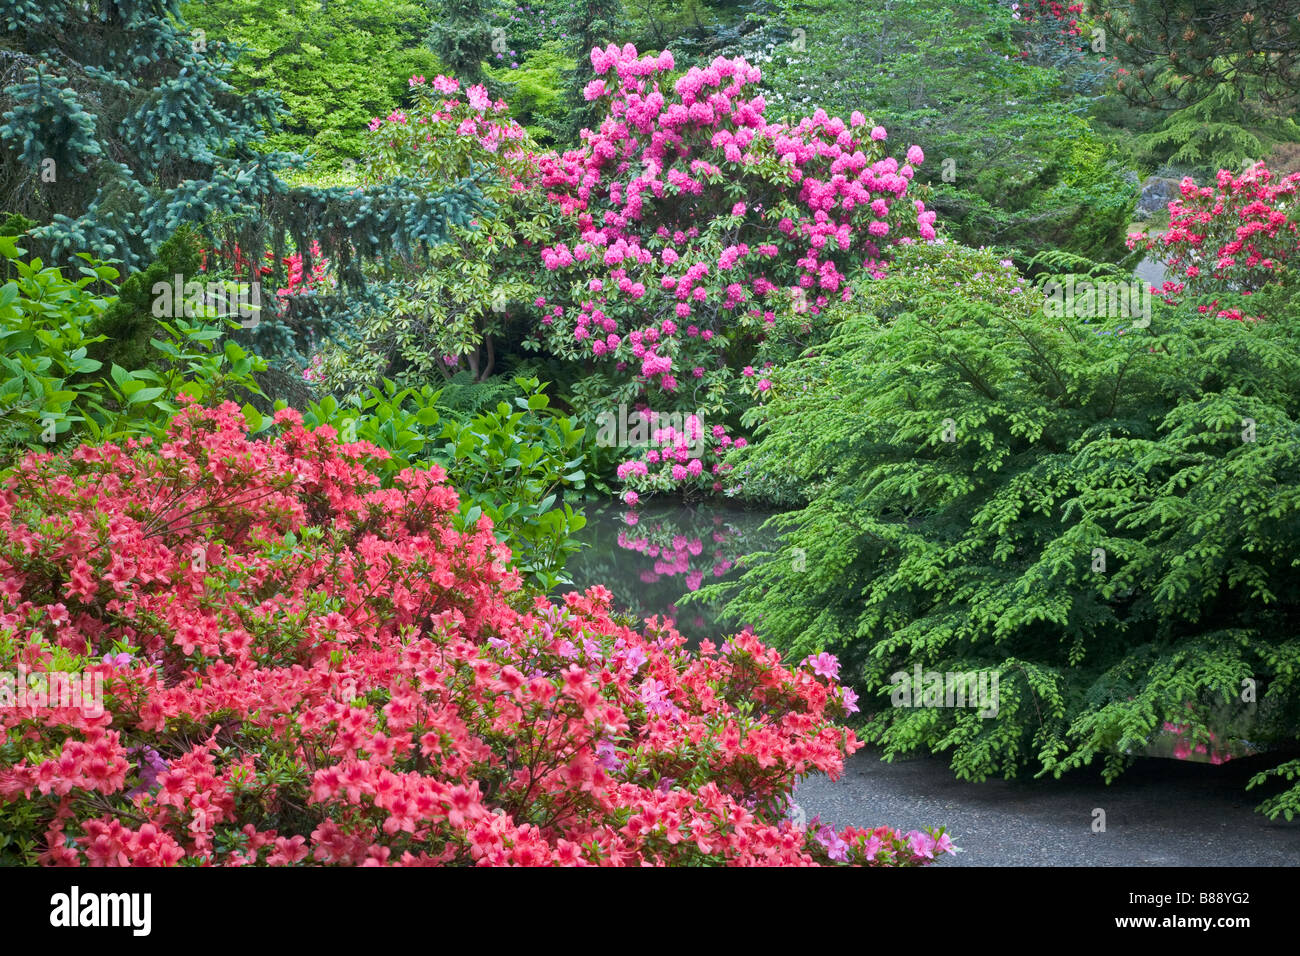 Seattle WA Kubota Garten Stadtpark blühenden Rhododendrons und mounded Sträuchern umgeben einen Gang mit einem Gartenteich Stockfoto